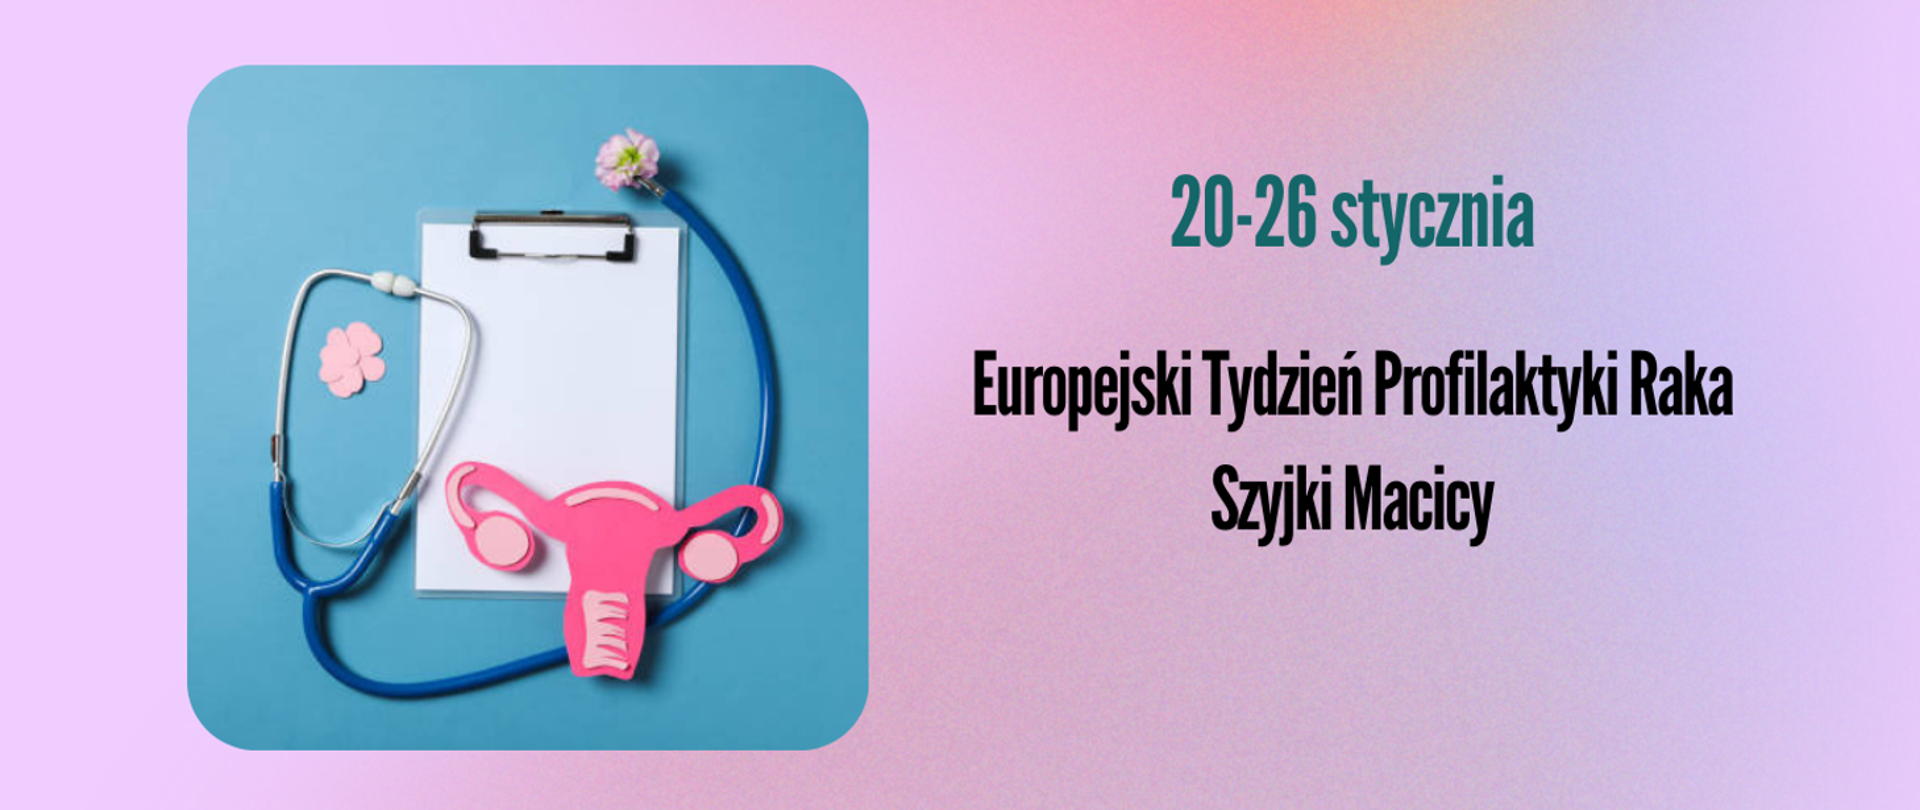 Na różowym tle umieszczono napis "20-26 stycznia - Europejski Tydzień Profilaktyki Raka Szyjki Macicy"